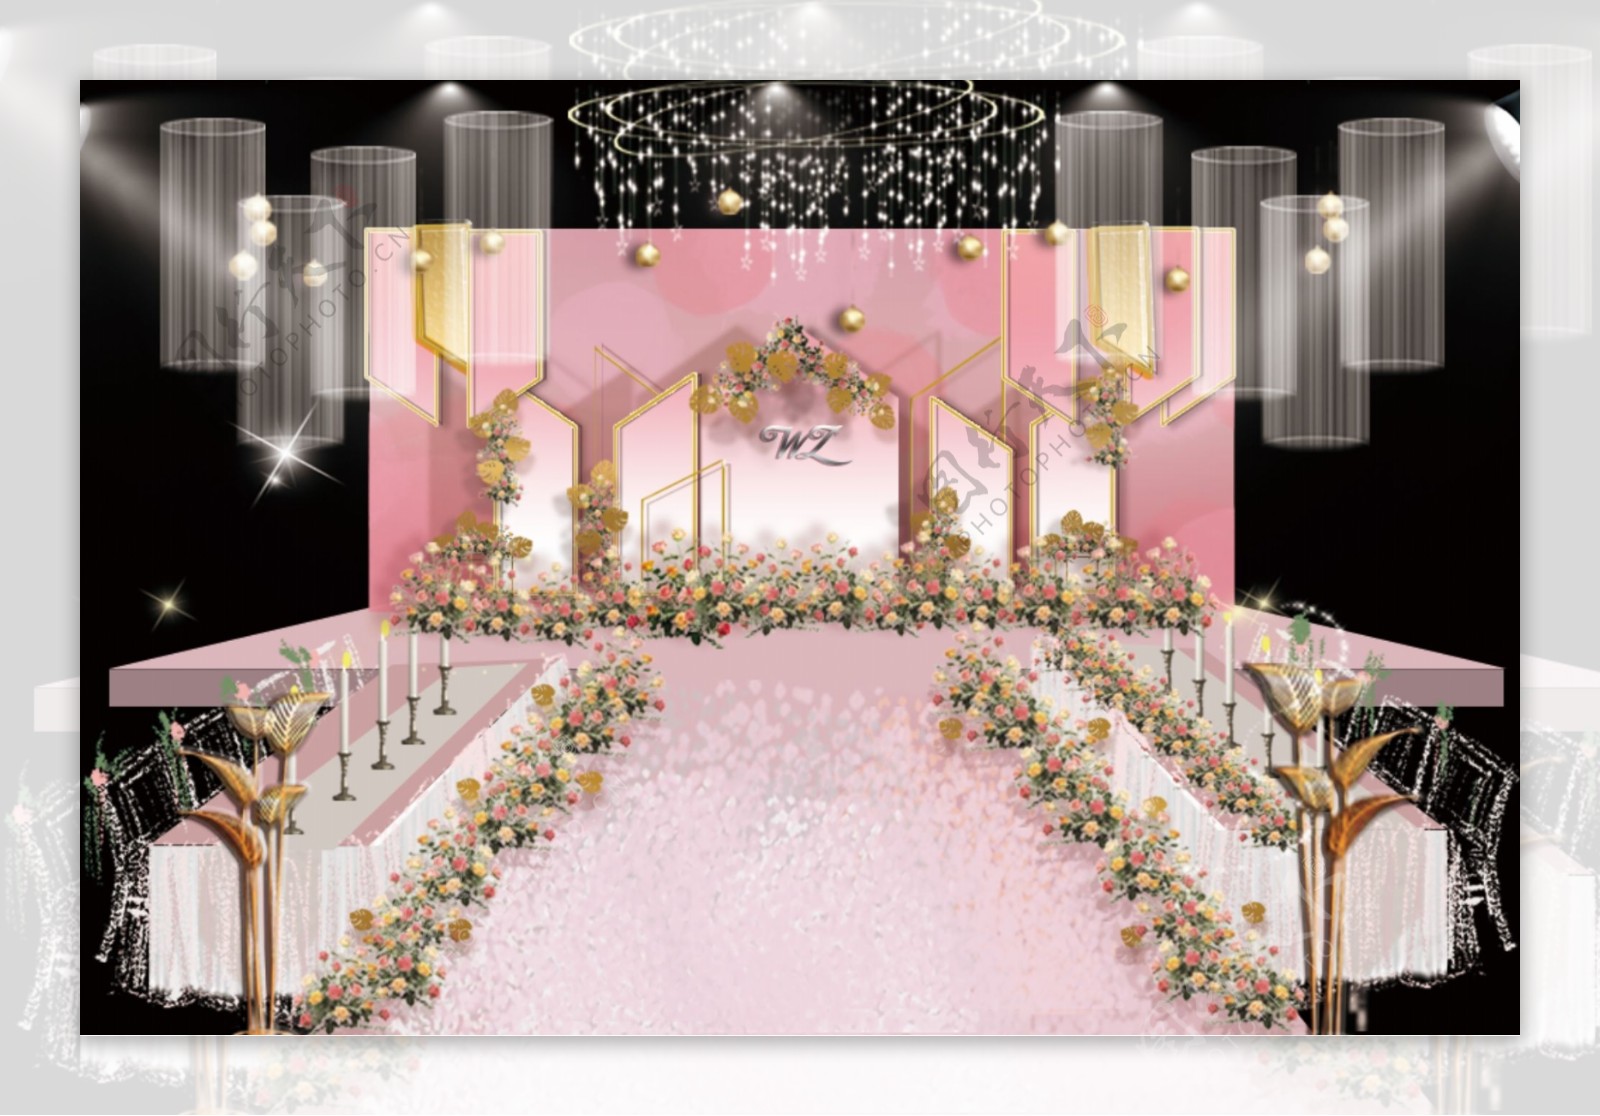 粉金色婚礼舞台效果图